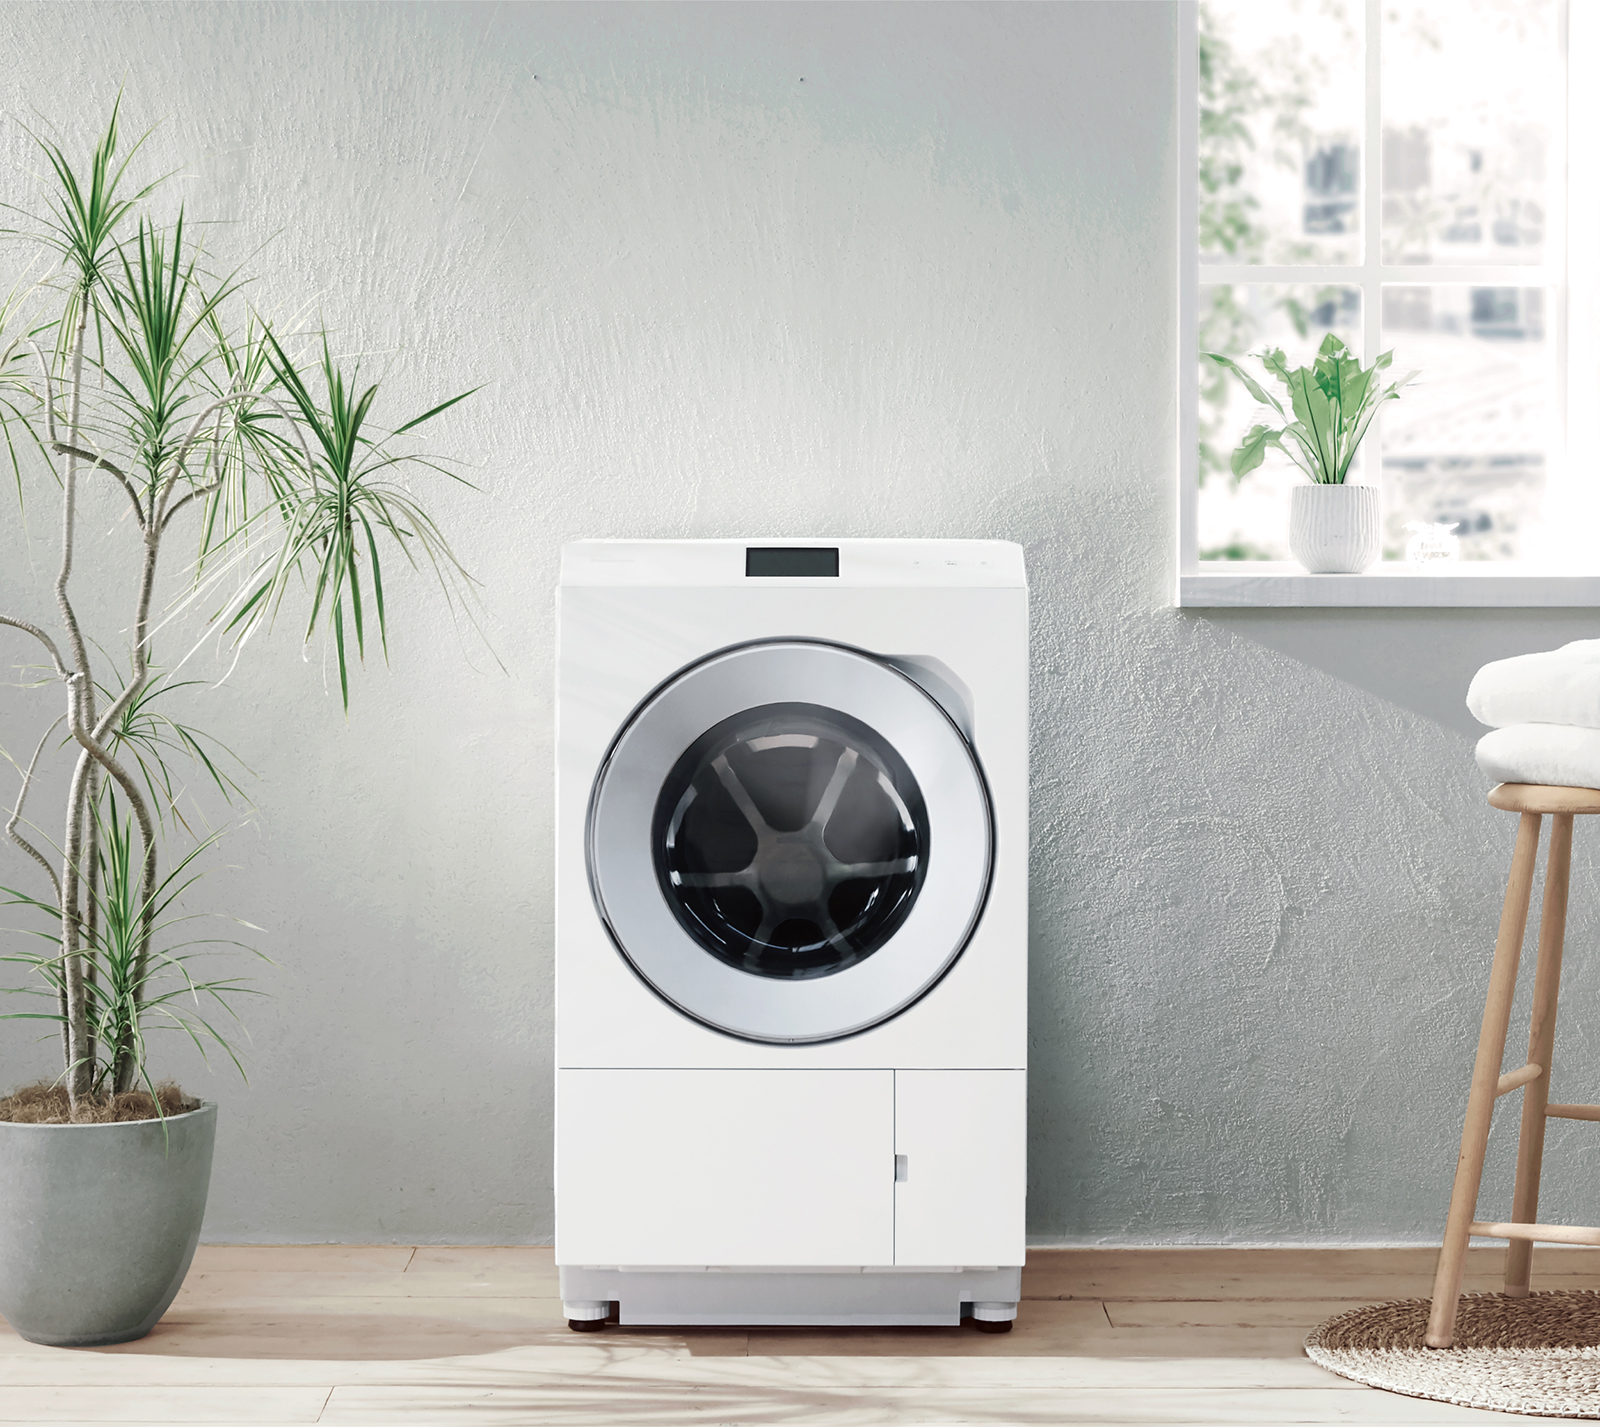 ななめドラム洗濯乾燥機 NA-LX129BL他 4機種を発売 | 個人向け商品 ...